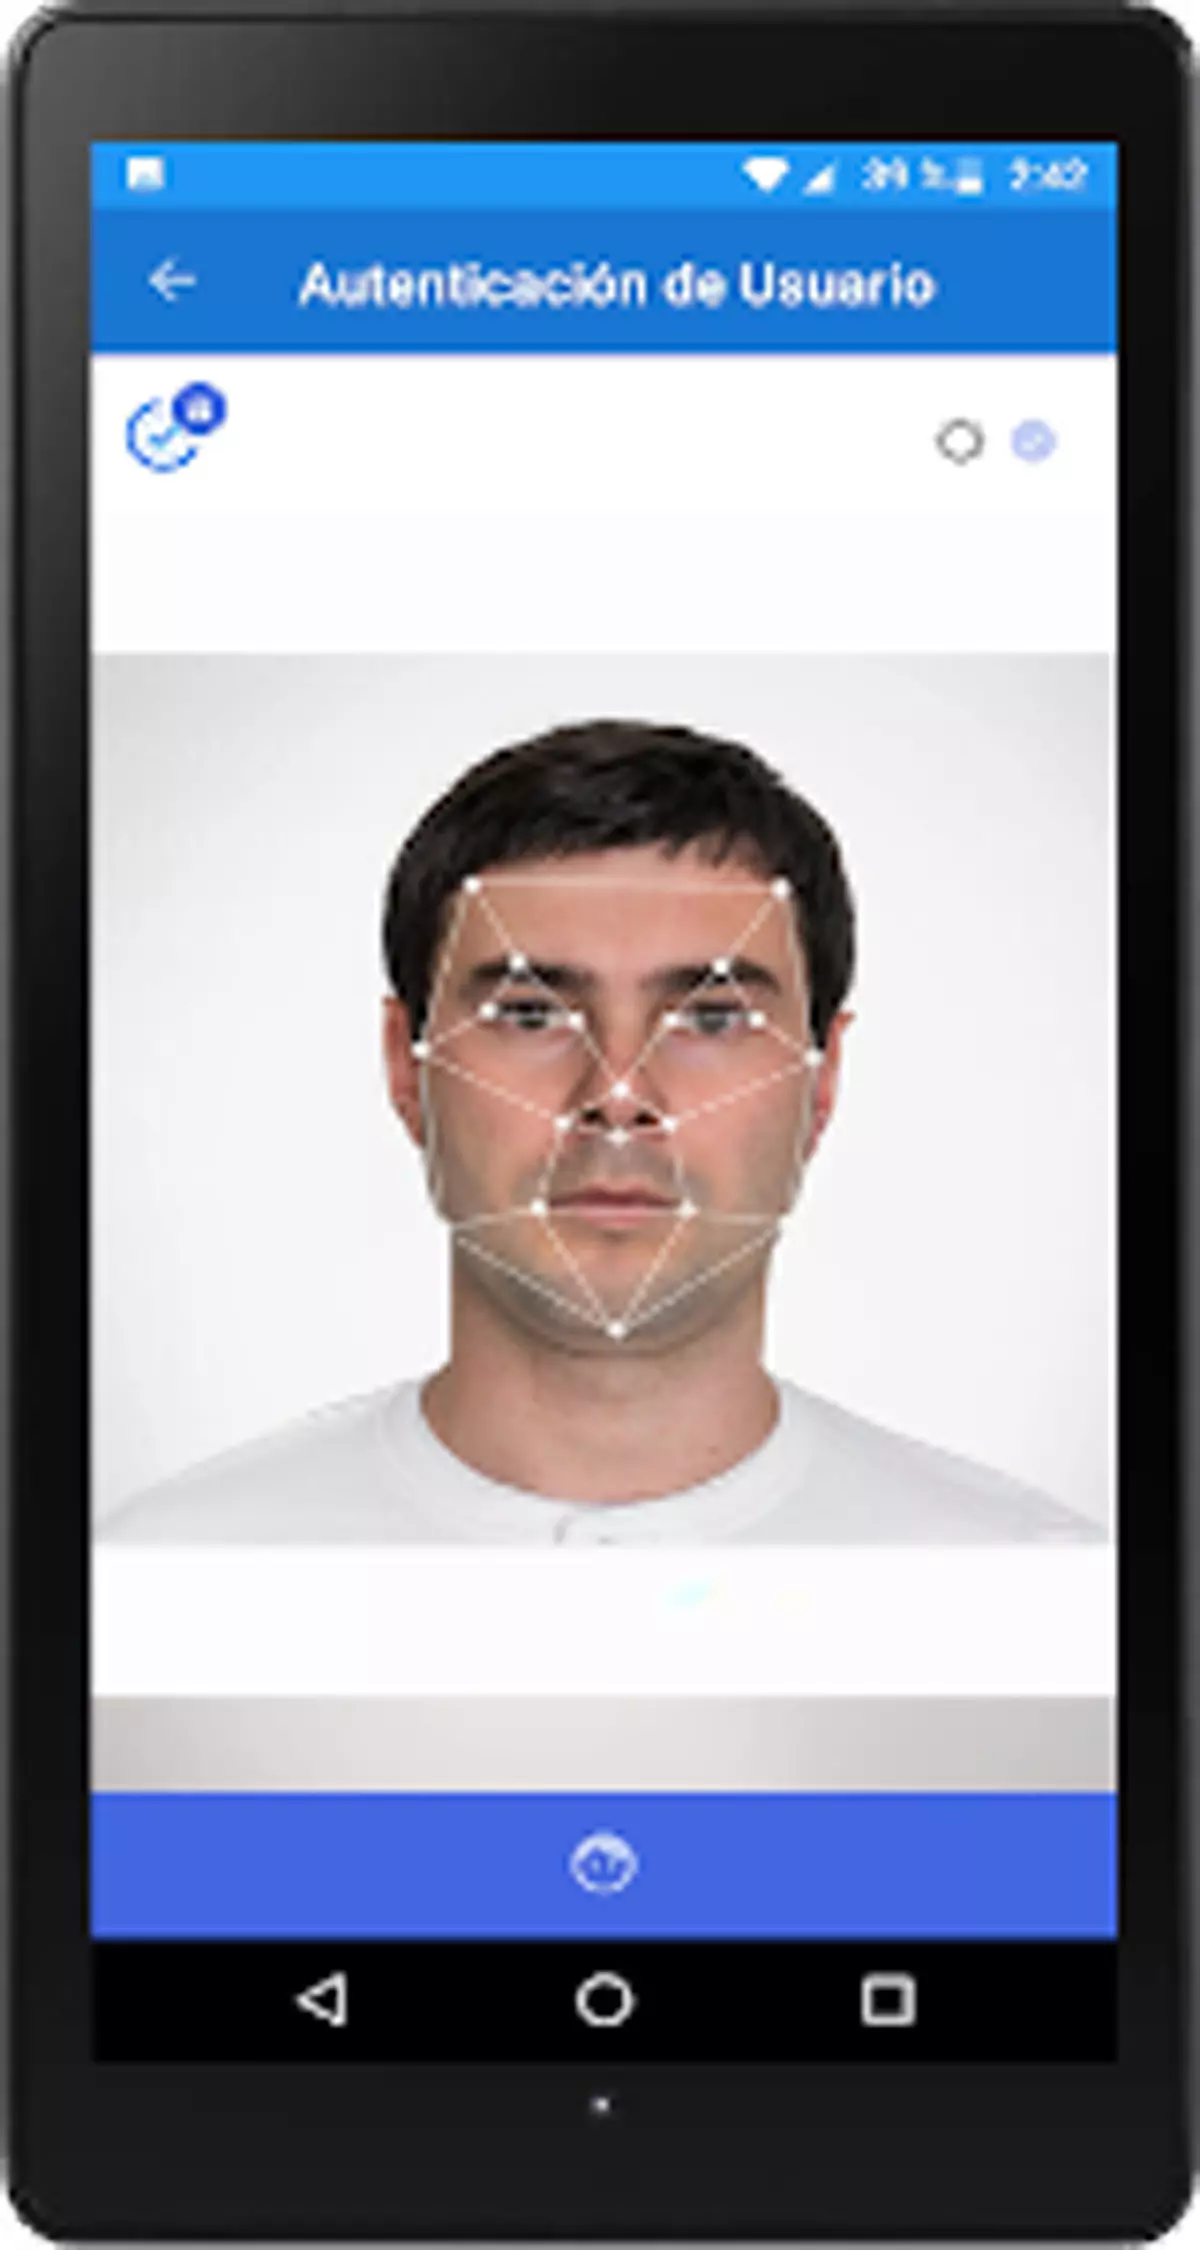 Inngresa incorpora la más avanzada tecnología de reconocimiento biométrico de rostro en todas sus aplicaciones: tablets, smartphone y Pc